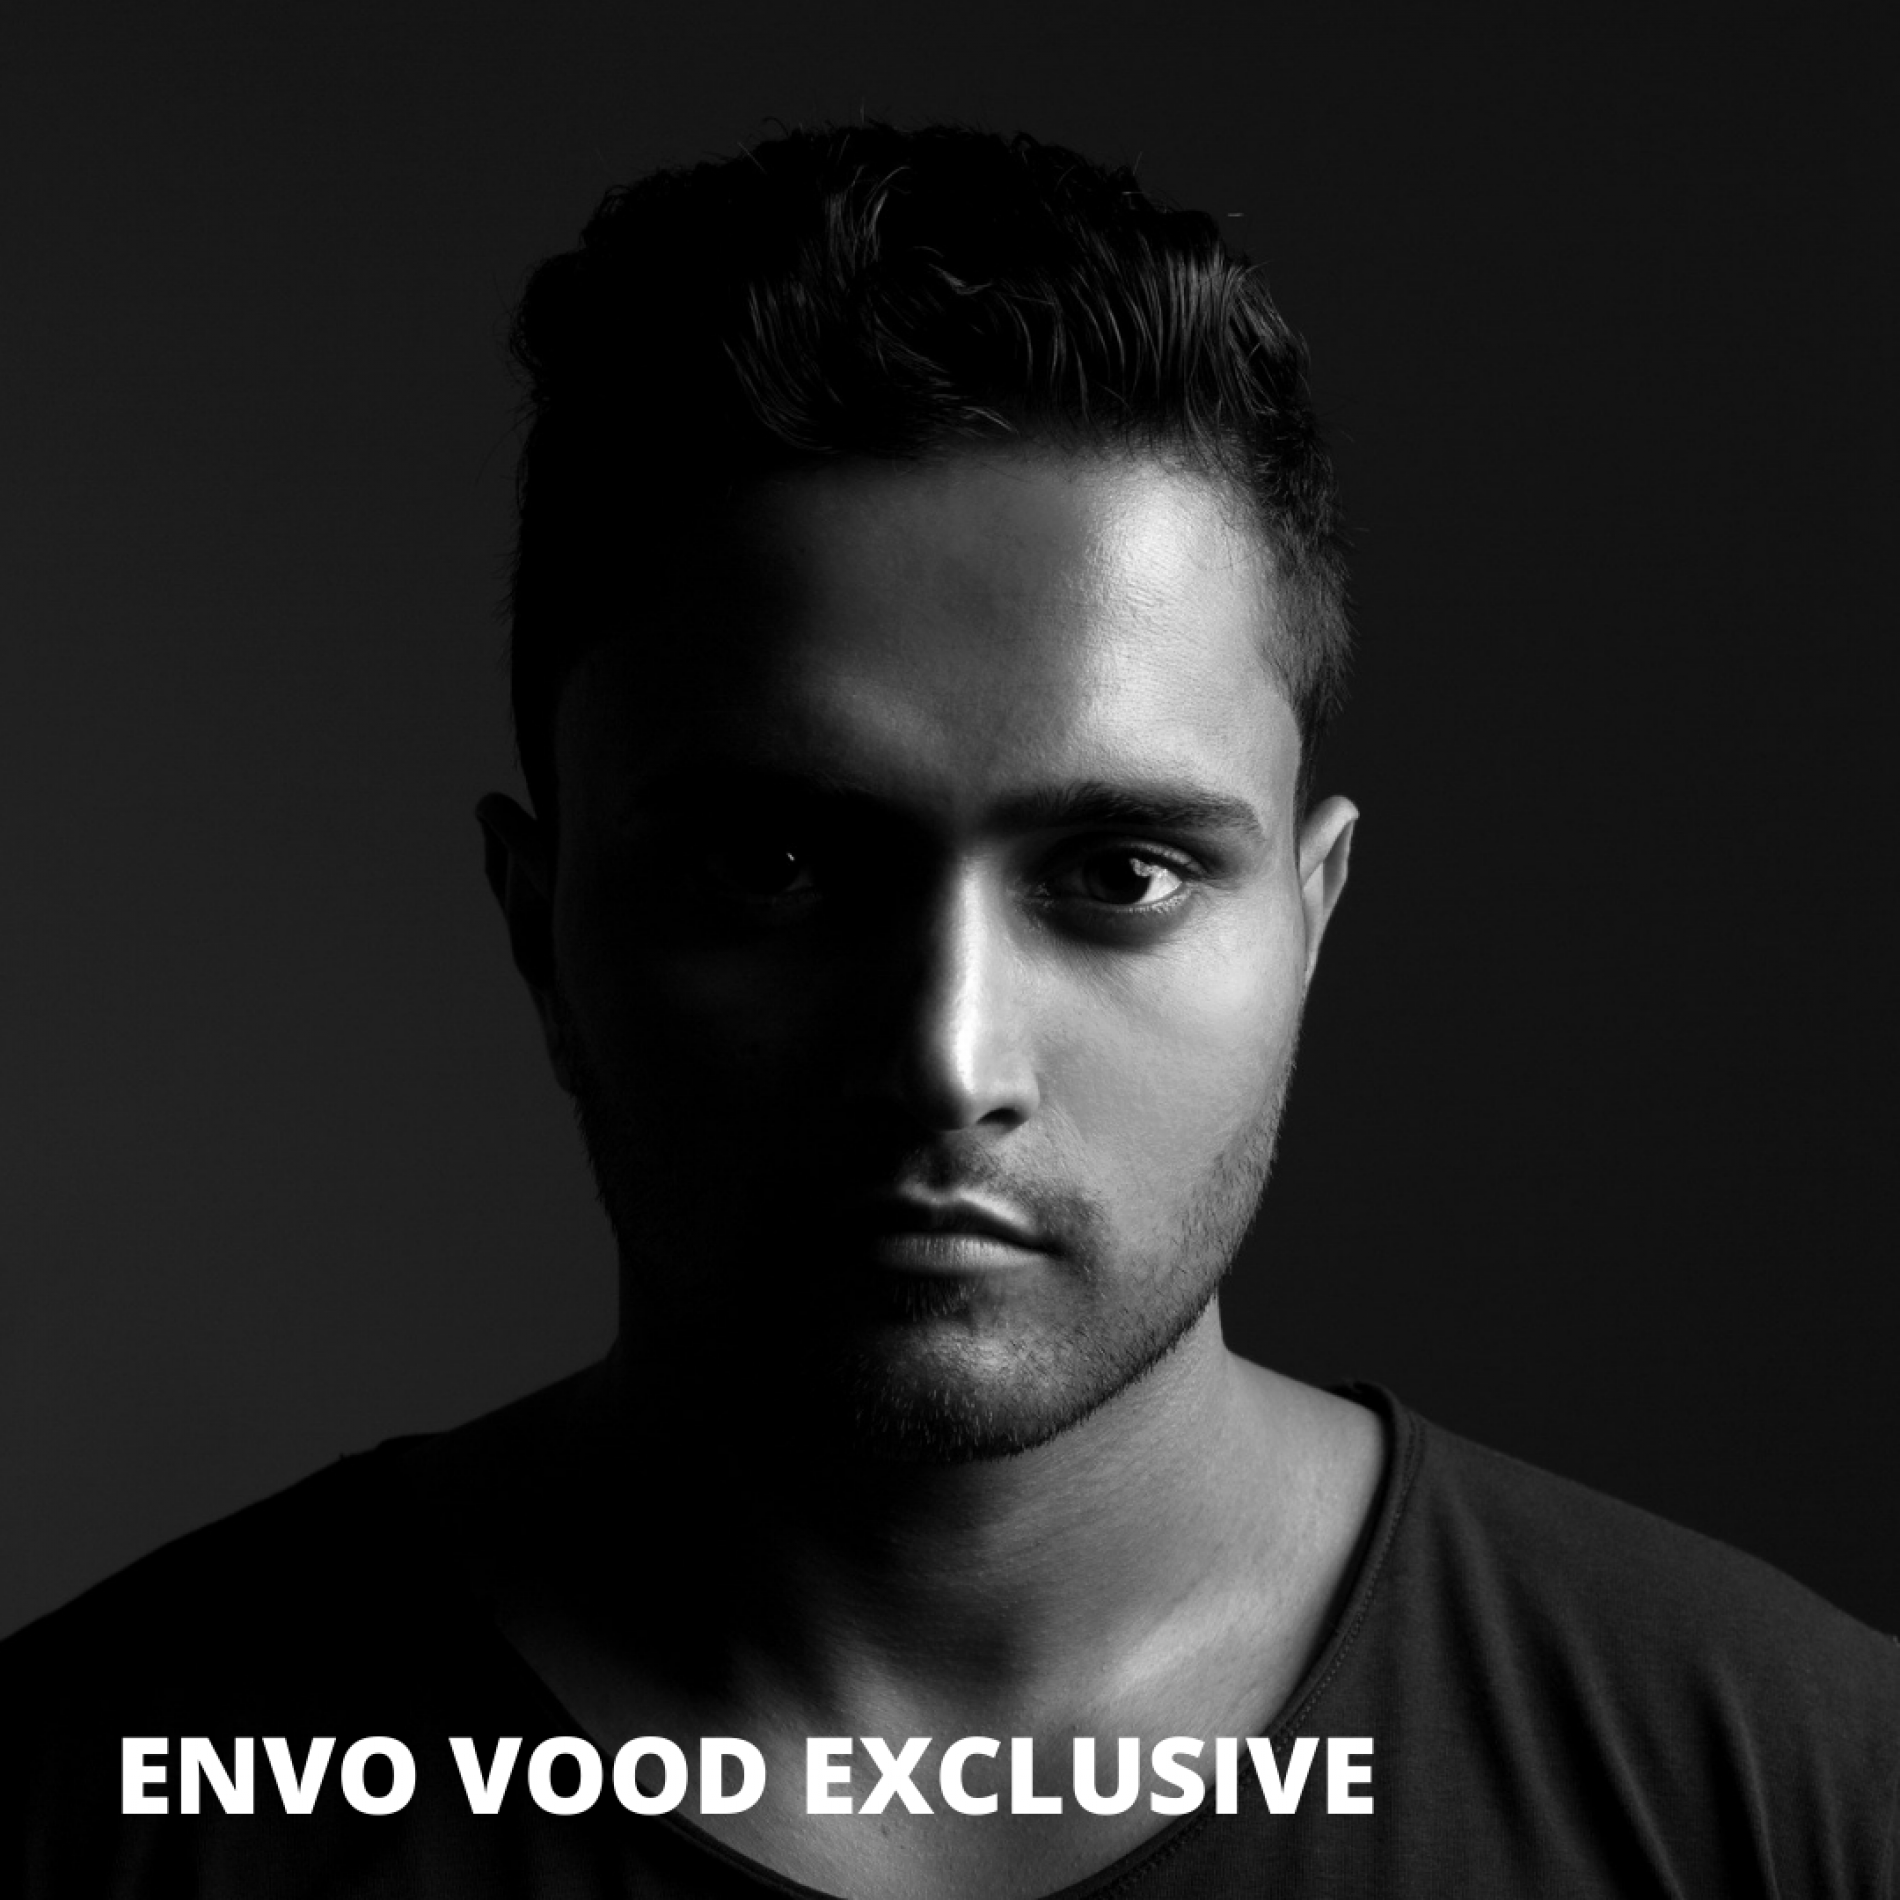 That Enzo Vood Exclusive!